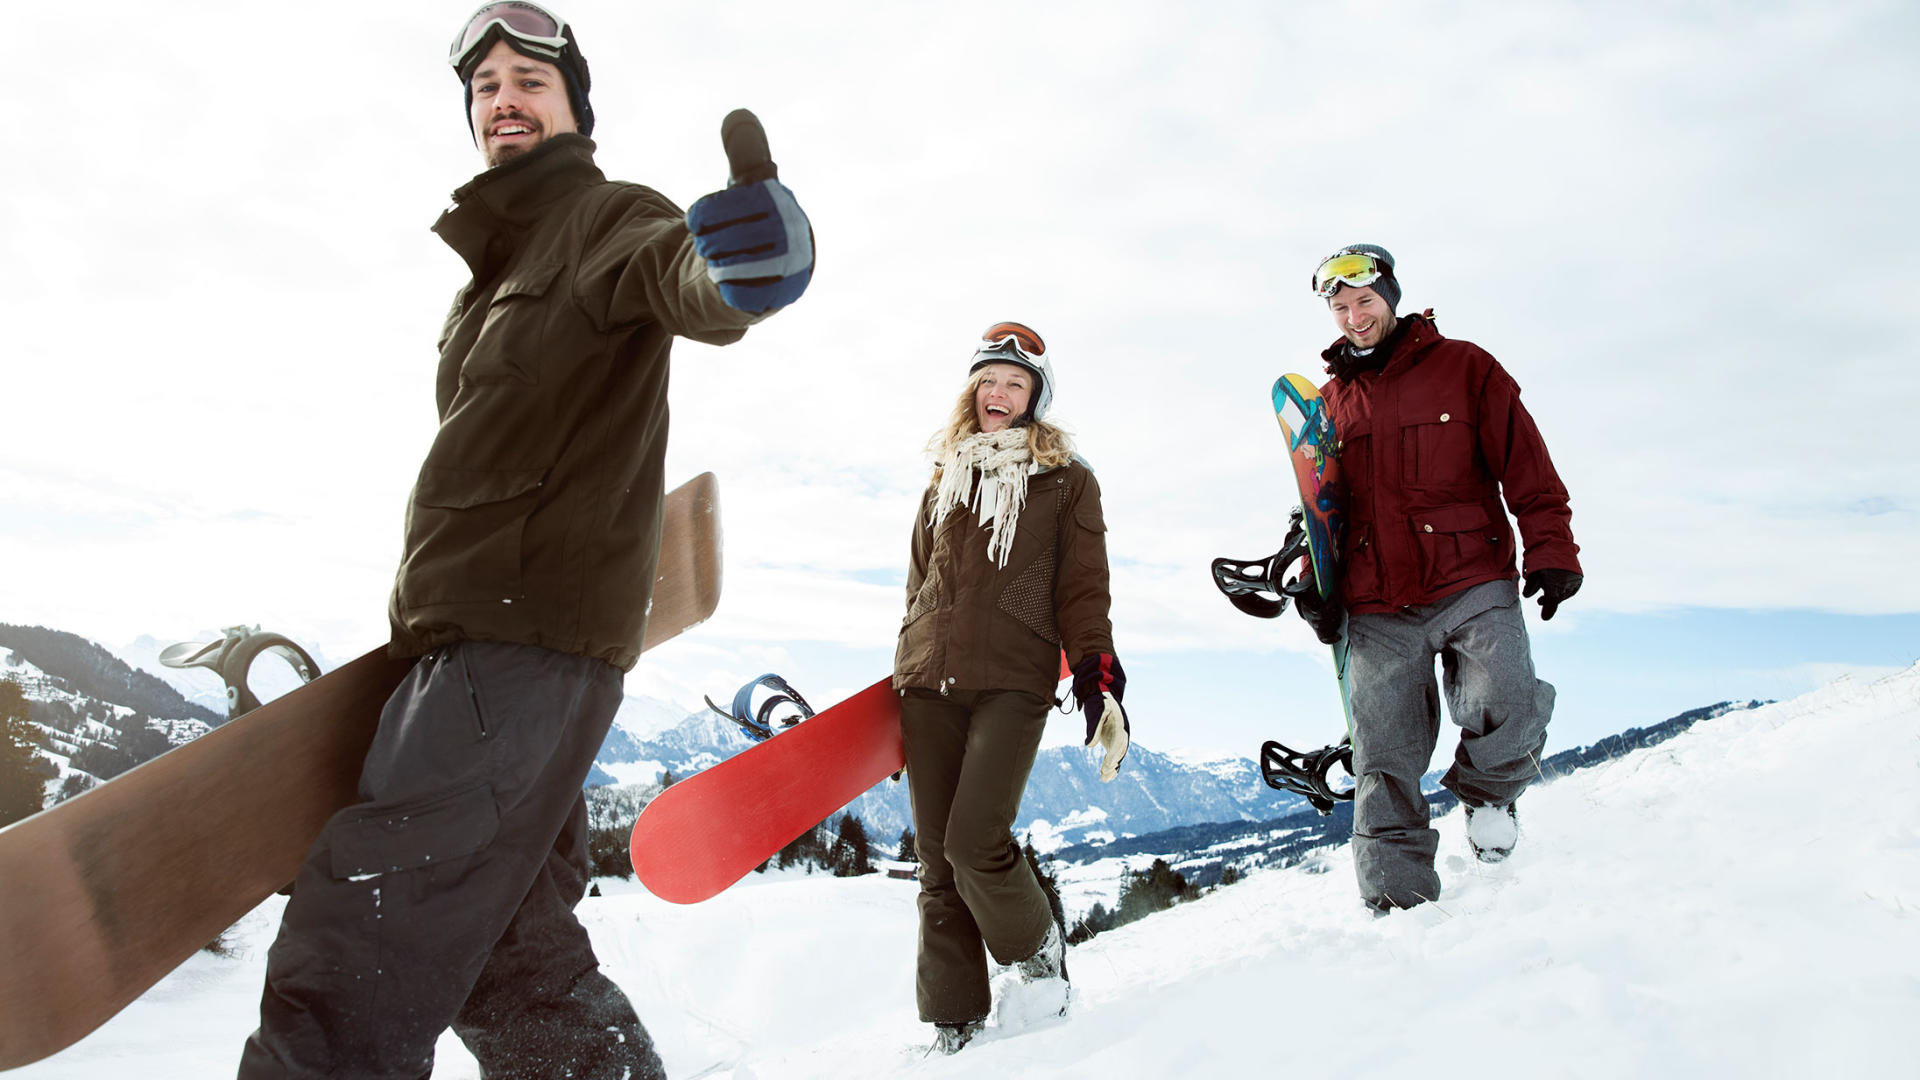 Tre adolescenti con gli snowboard nella neve.